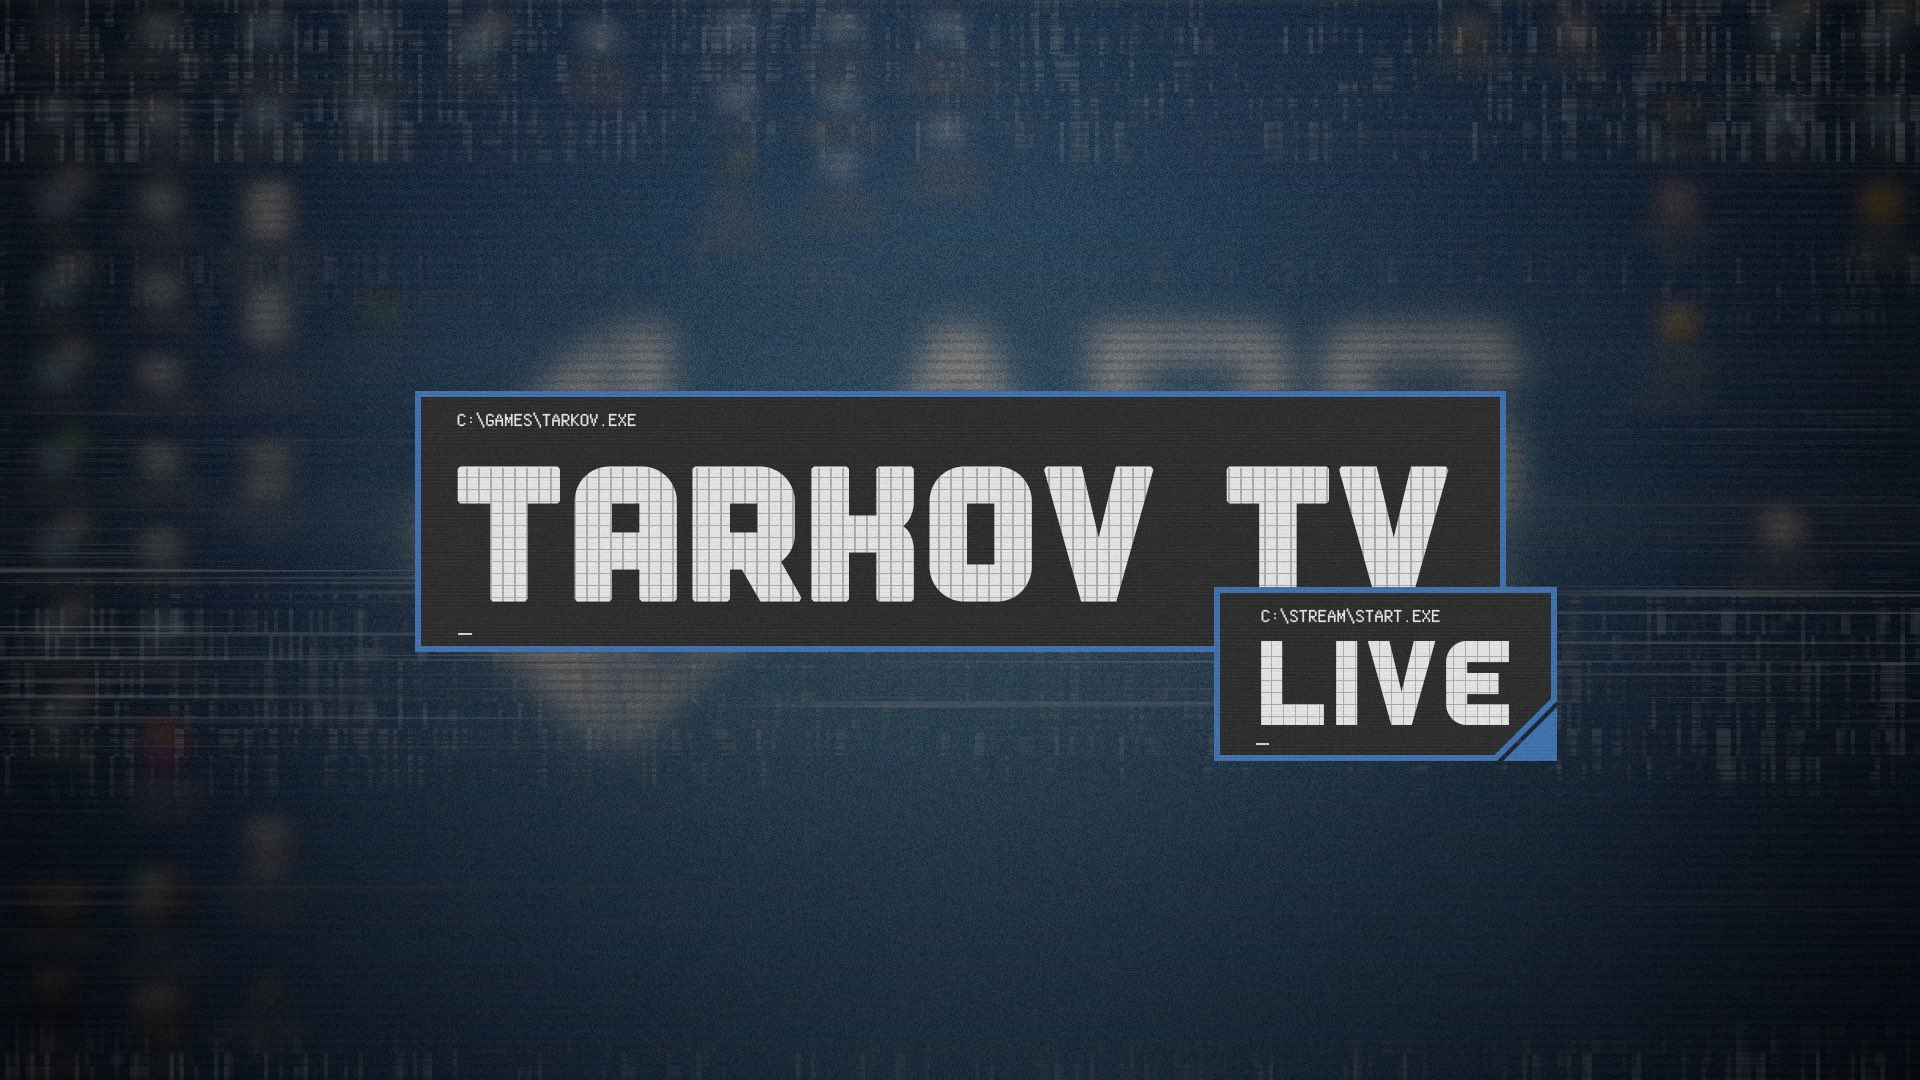 TARKOV TV LIVE,タルコフTV